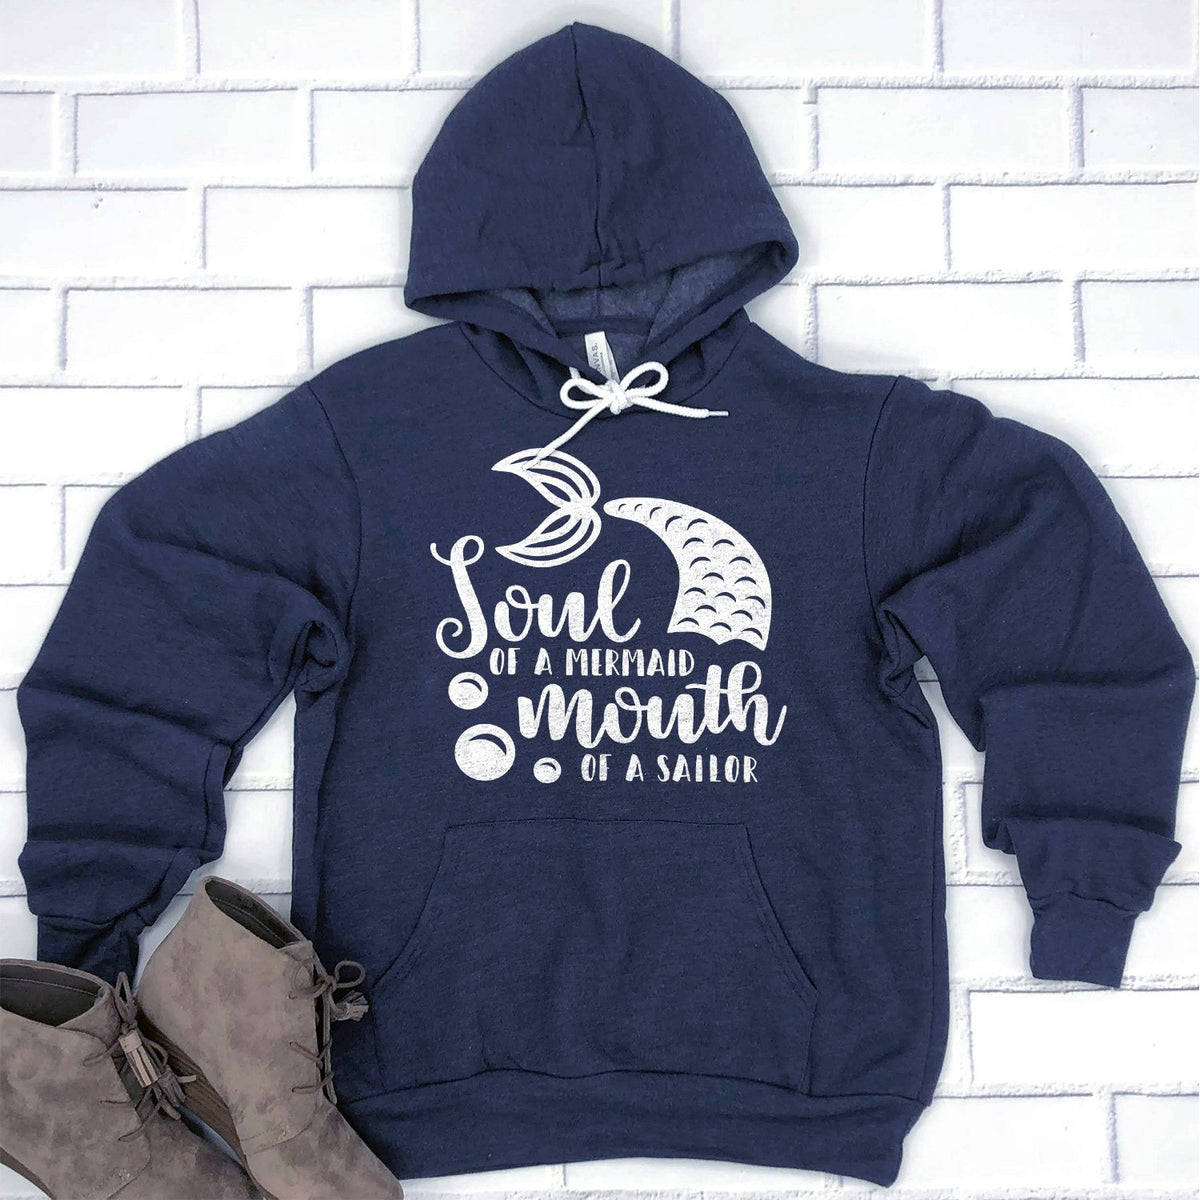 Soul of A Mermaid Mouth of A Sailor - Hoodie Sweatshirt